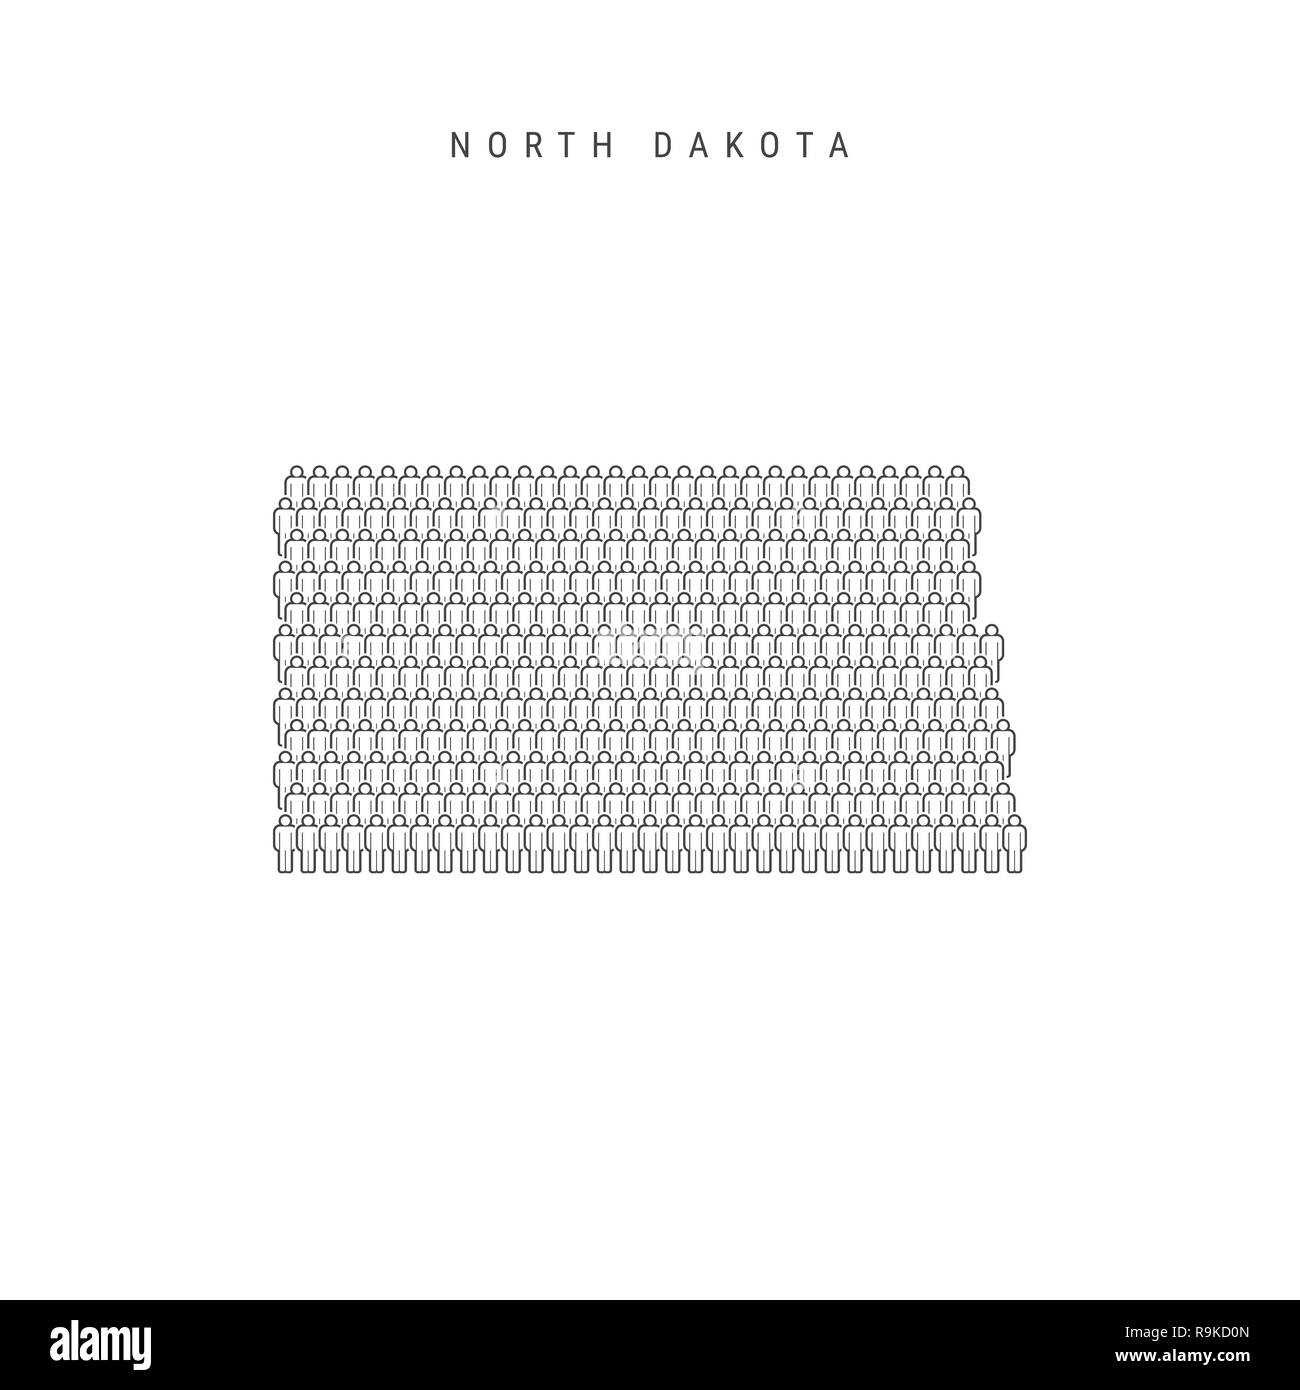 Leute Karte von North Dakota, USA. Stilisierte Silhouette, Leute in der Form einer Karte von North Dakota. North Dakota Bevölkerung. Abbildung I Stockfoto